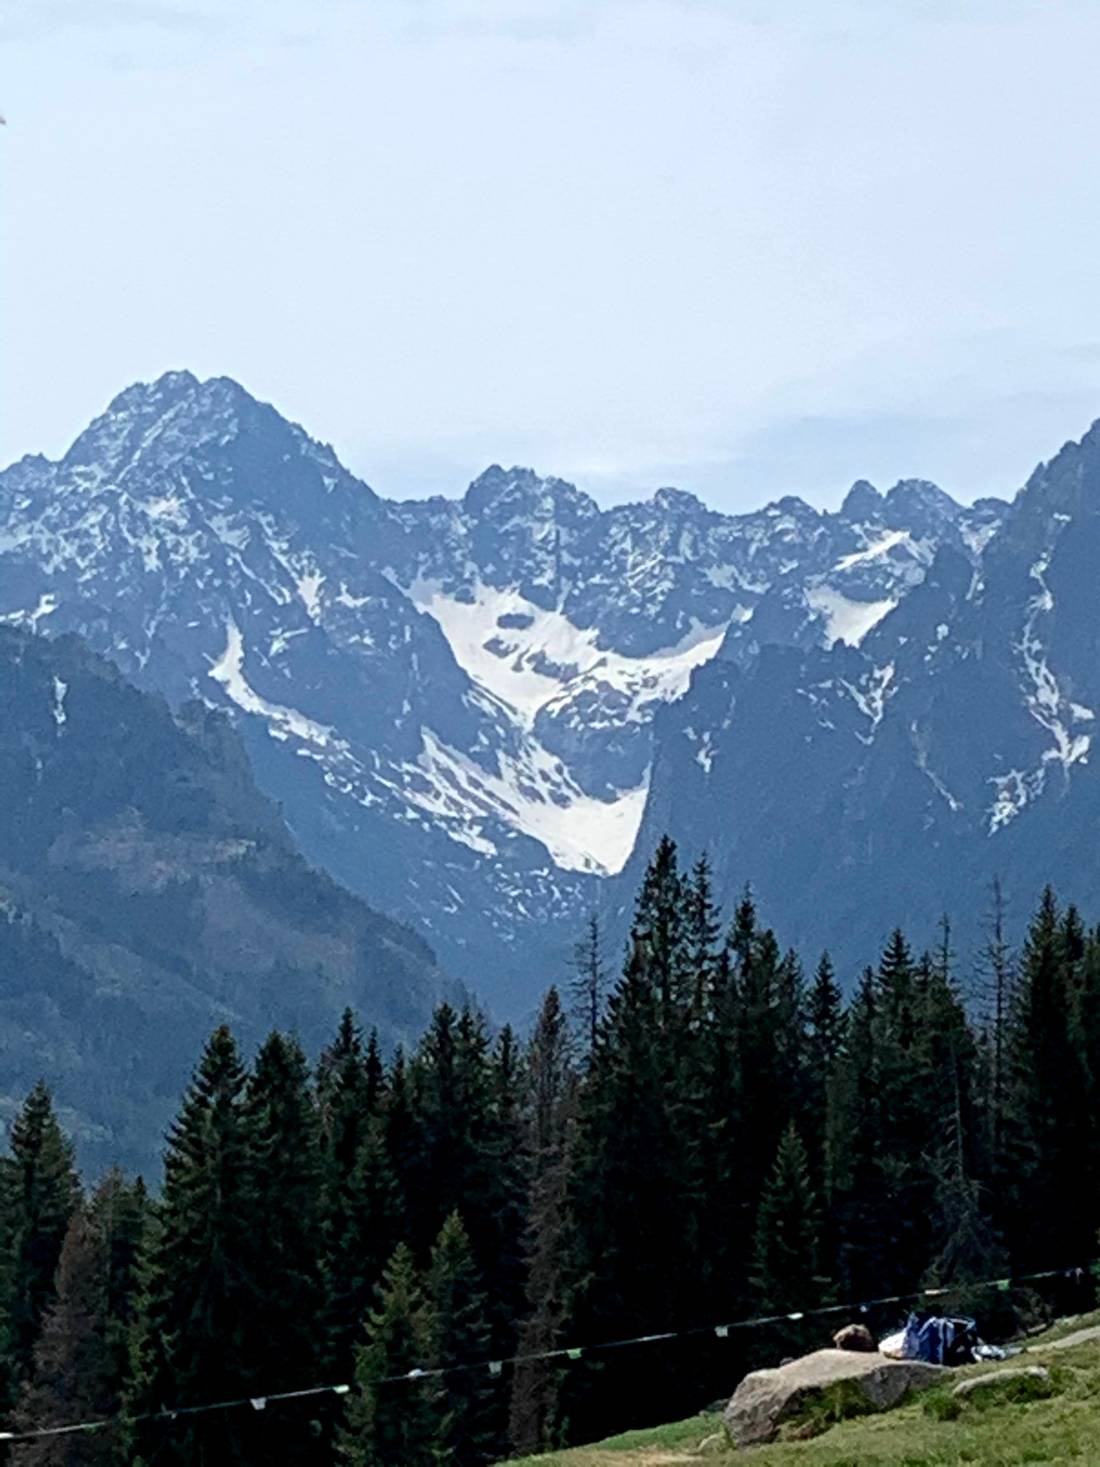 The Tatras viewed from Rusinowa Polana, Poland